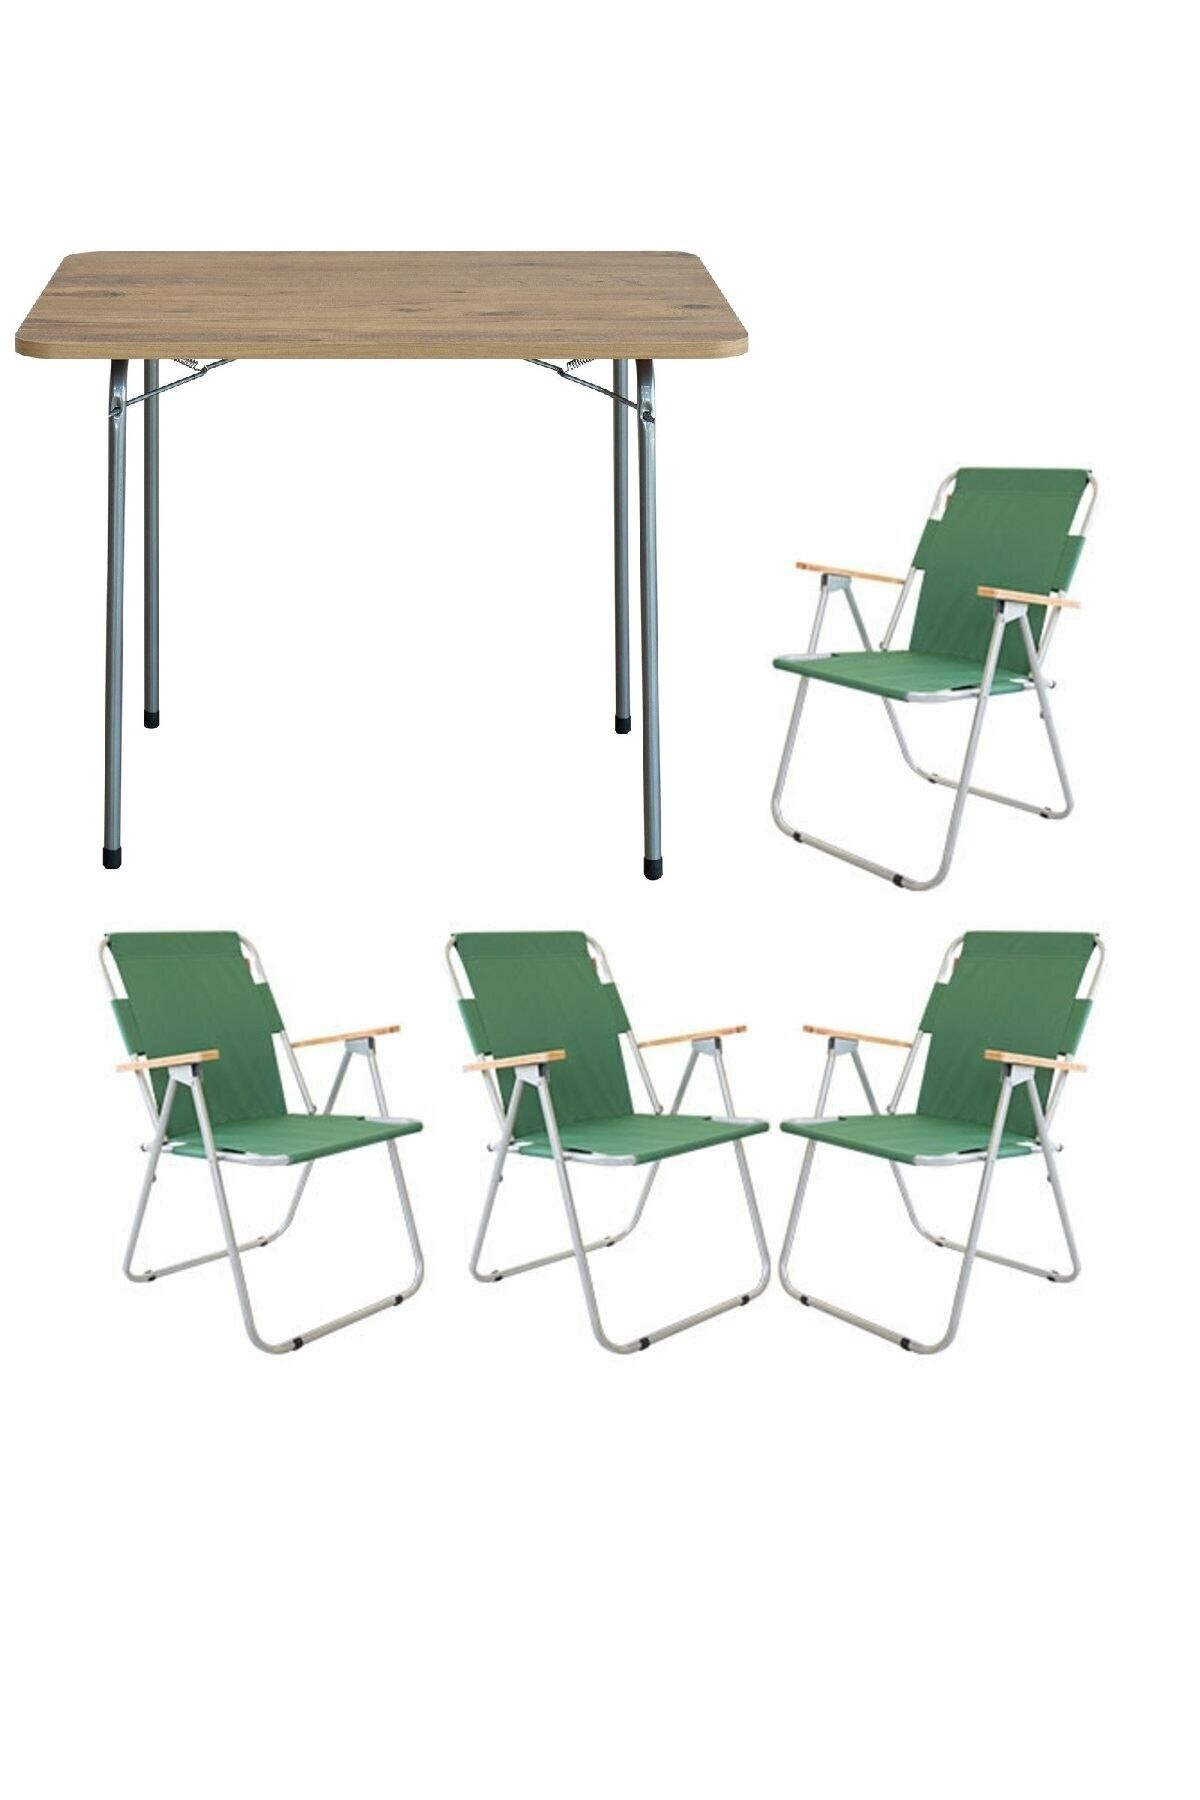 Bofigo 60x80 Pine Folding Table + 4 Pieces Folding Chair Camping Set Garden Balcony Set Green